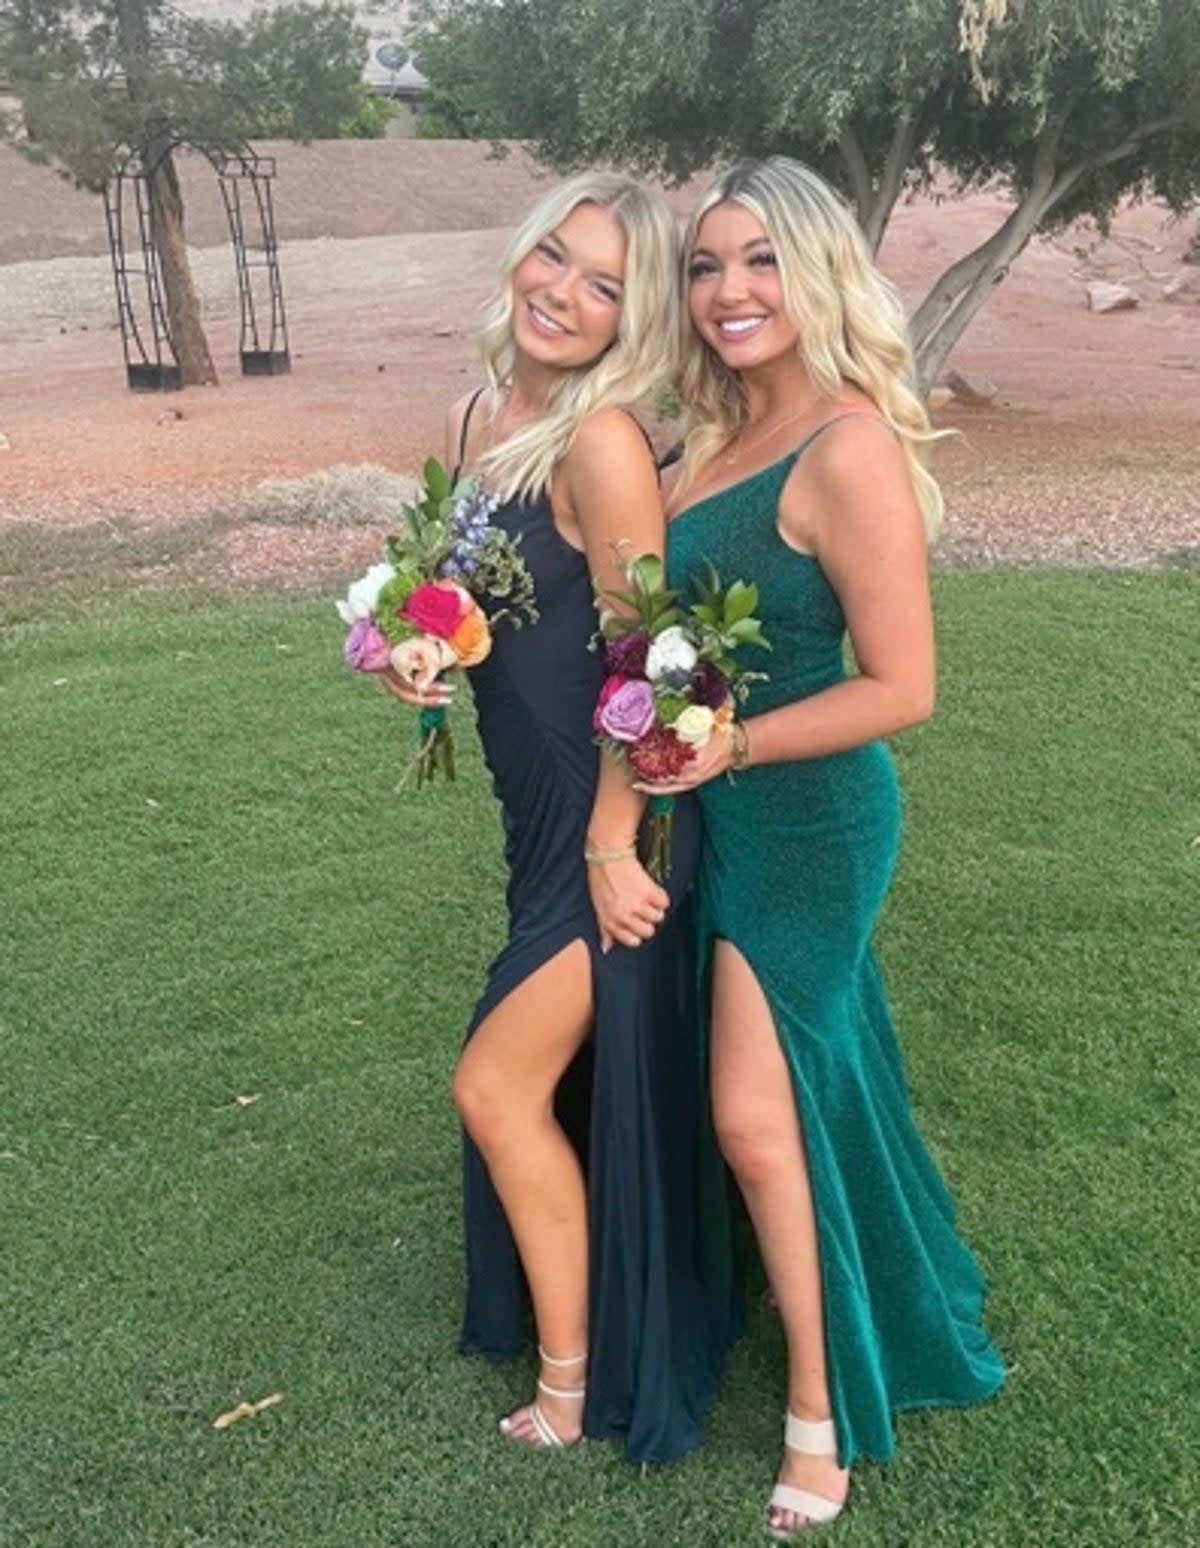 Madison Mogen and Kaylee Goncalves pictured together (Instagram)